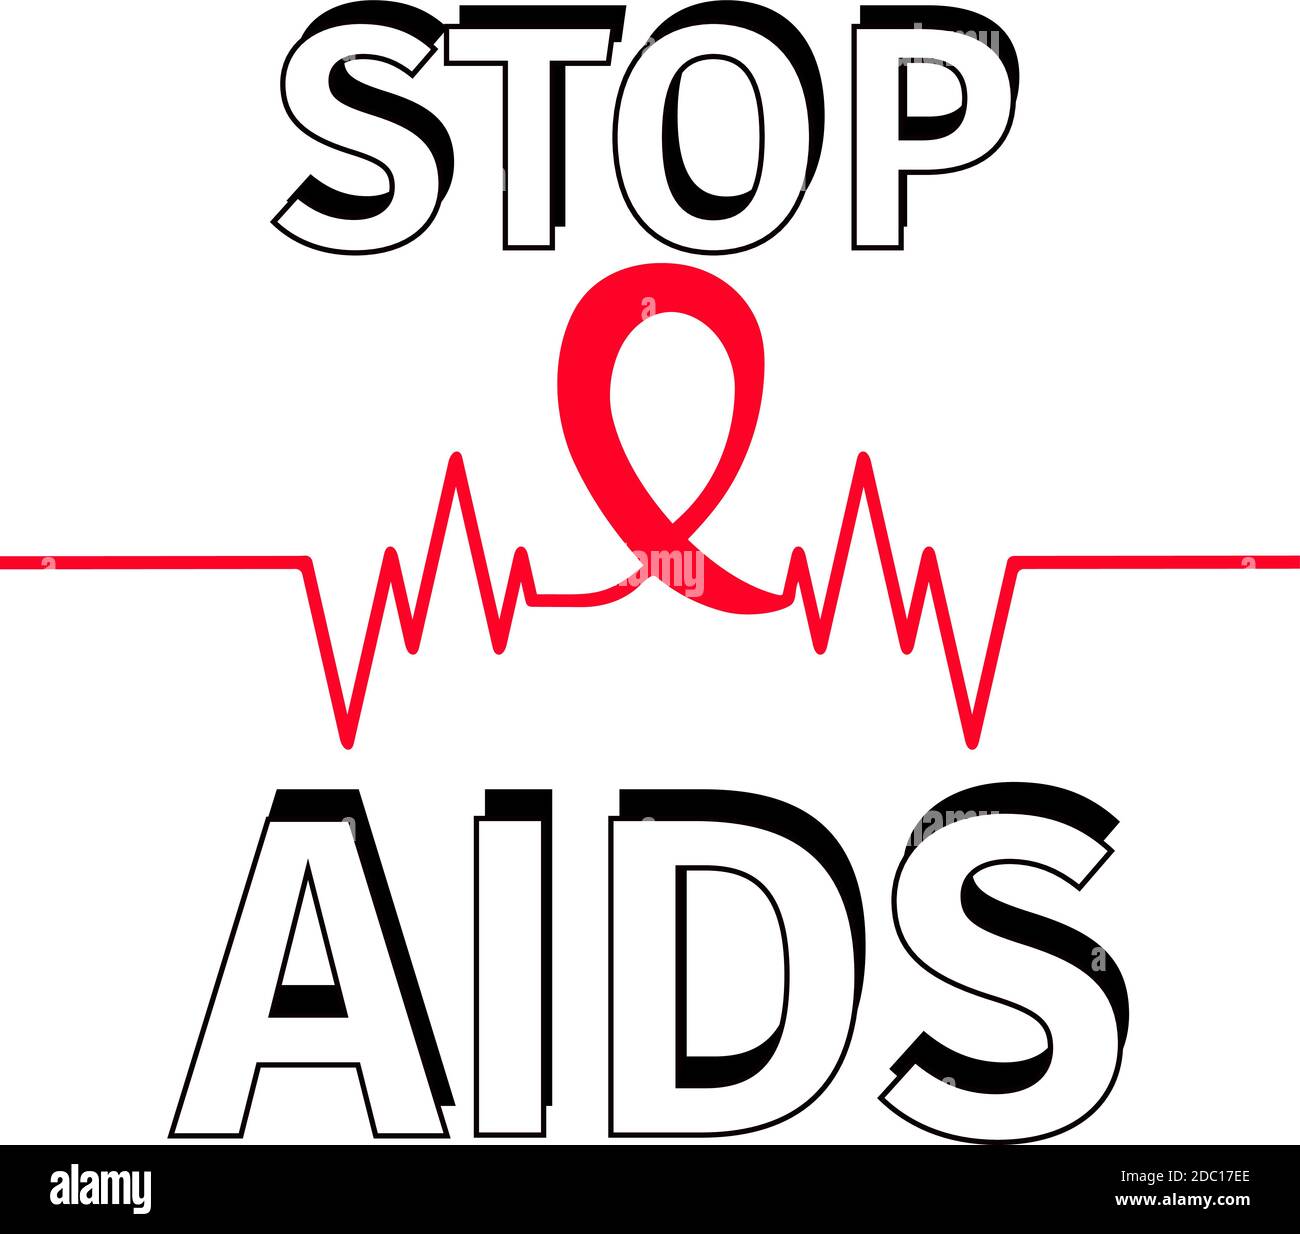 continua una riga di nastro rosso per badge. Giornata mondiale contro l'HIV  1 dicembre. simbolo